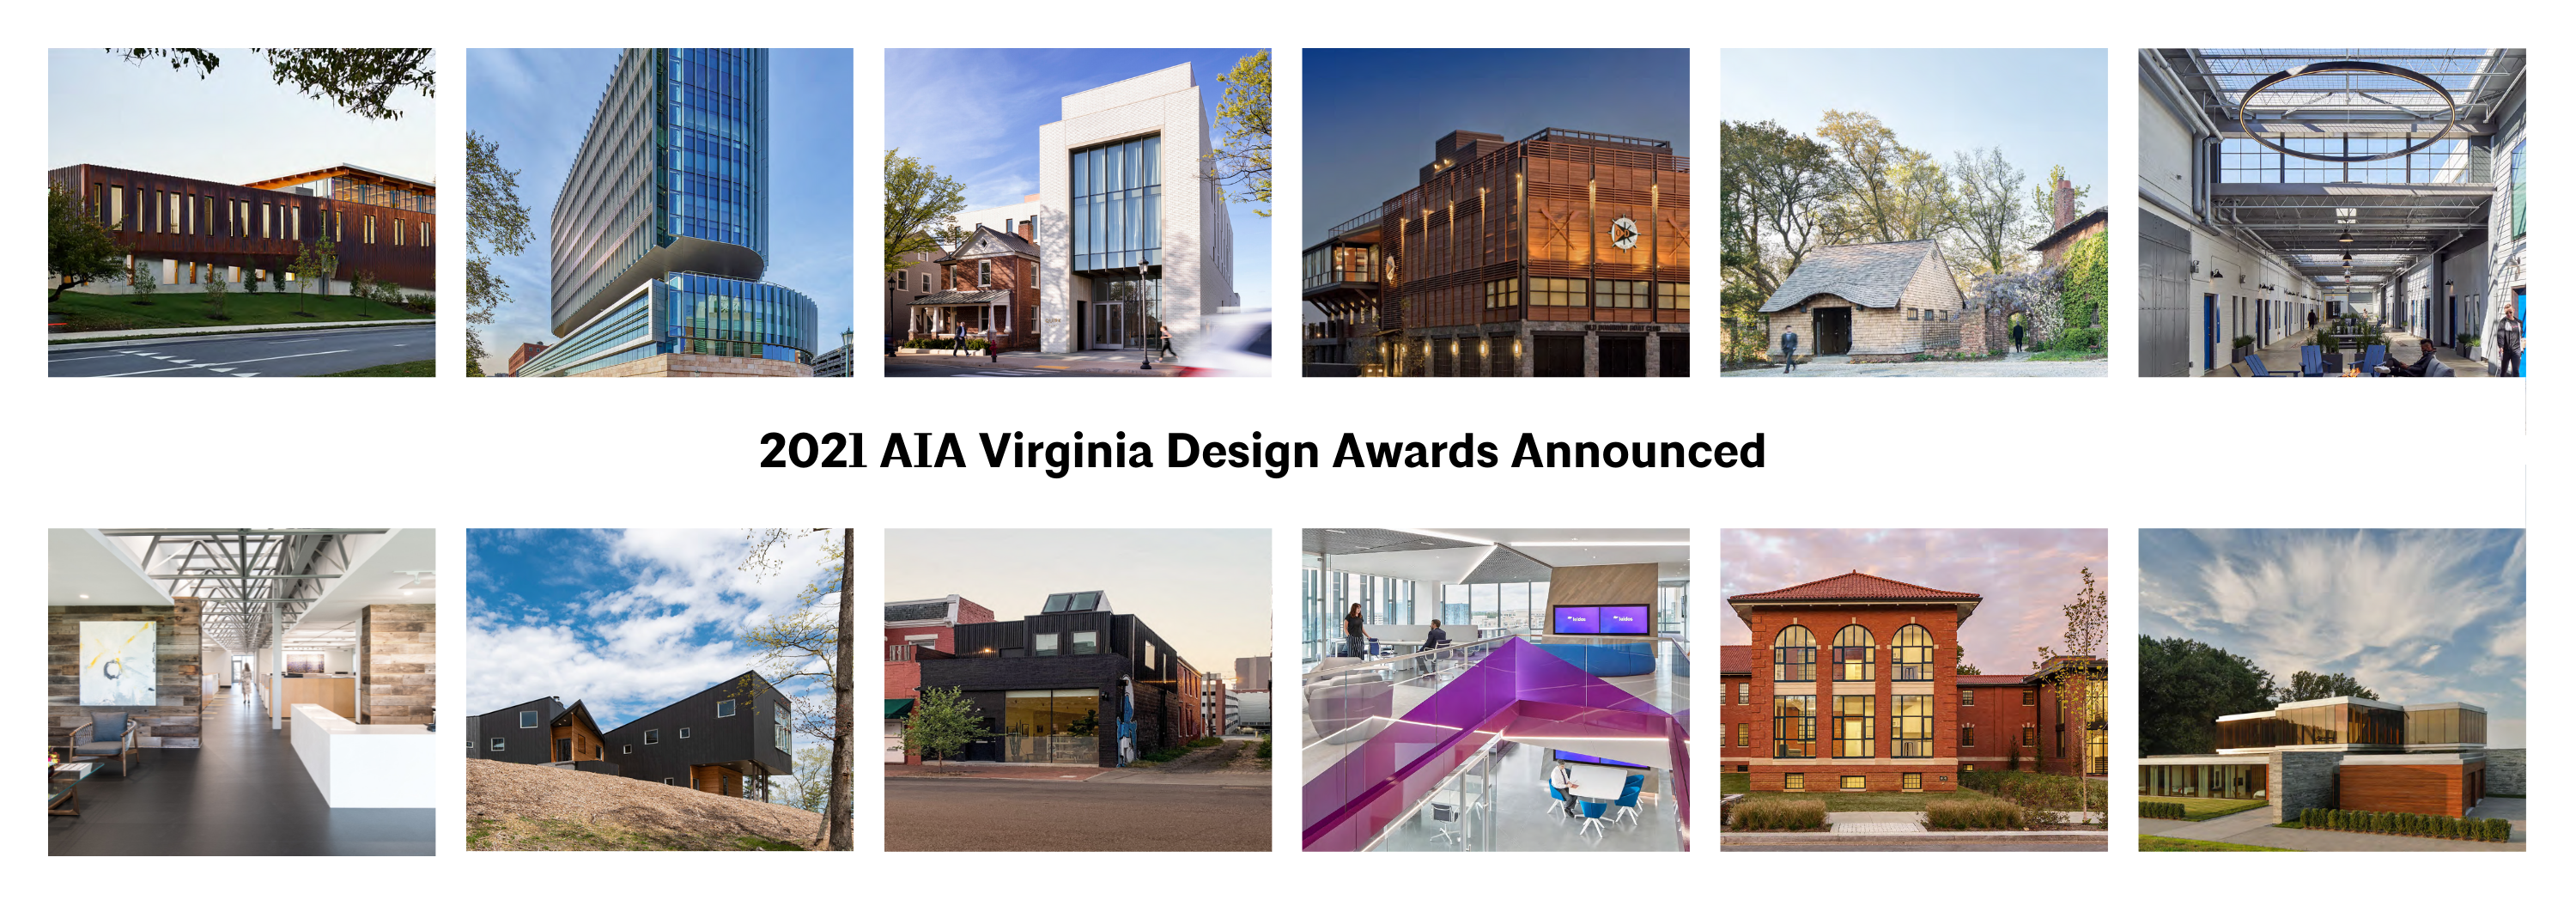 2021 Design Awards Announced